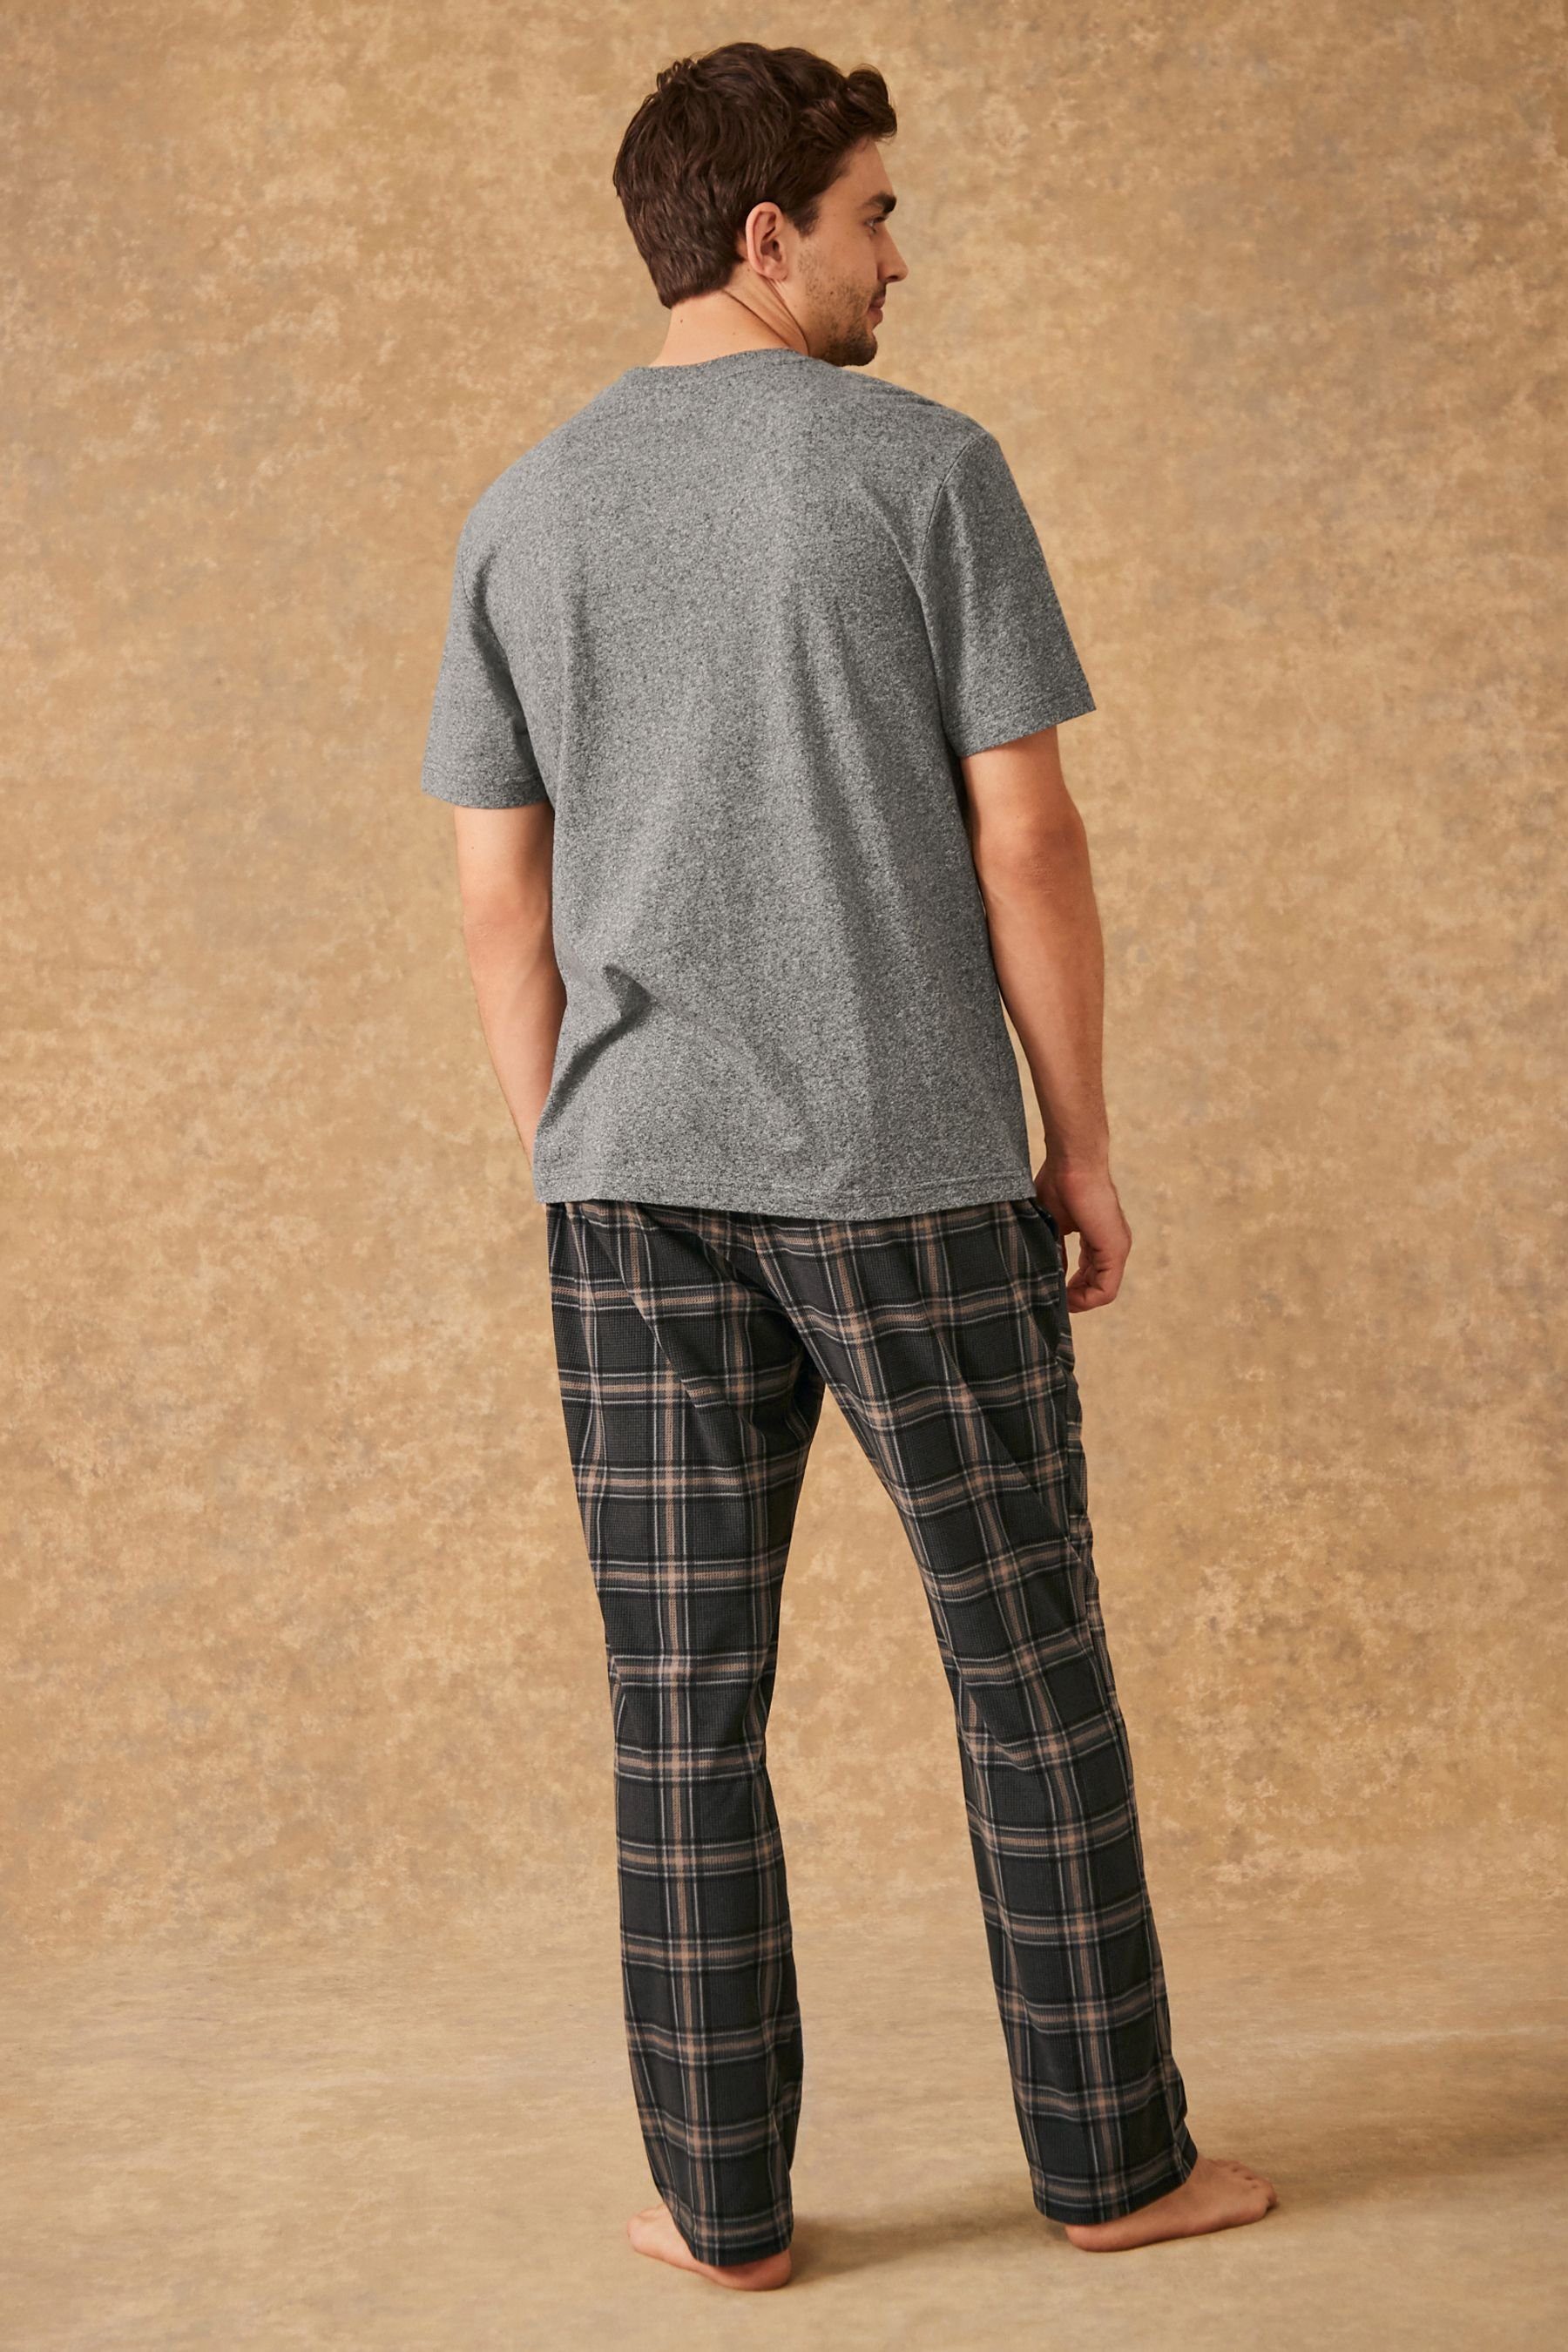 Next Pyjama Bequemer Motionflex Schlafanzug tlg) Check Grey/Black (2